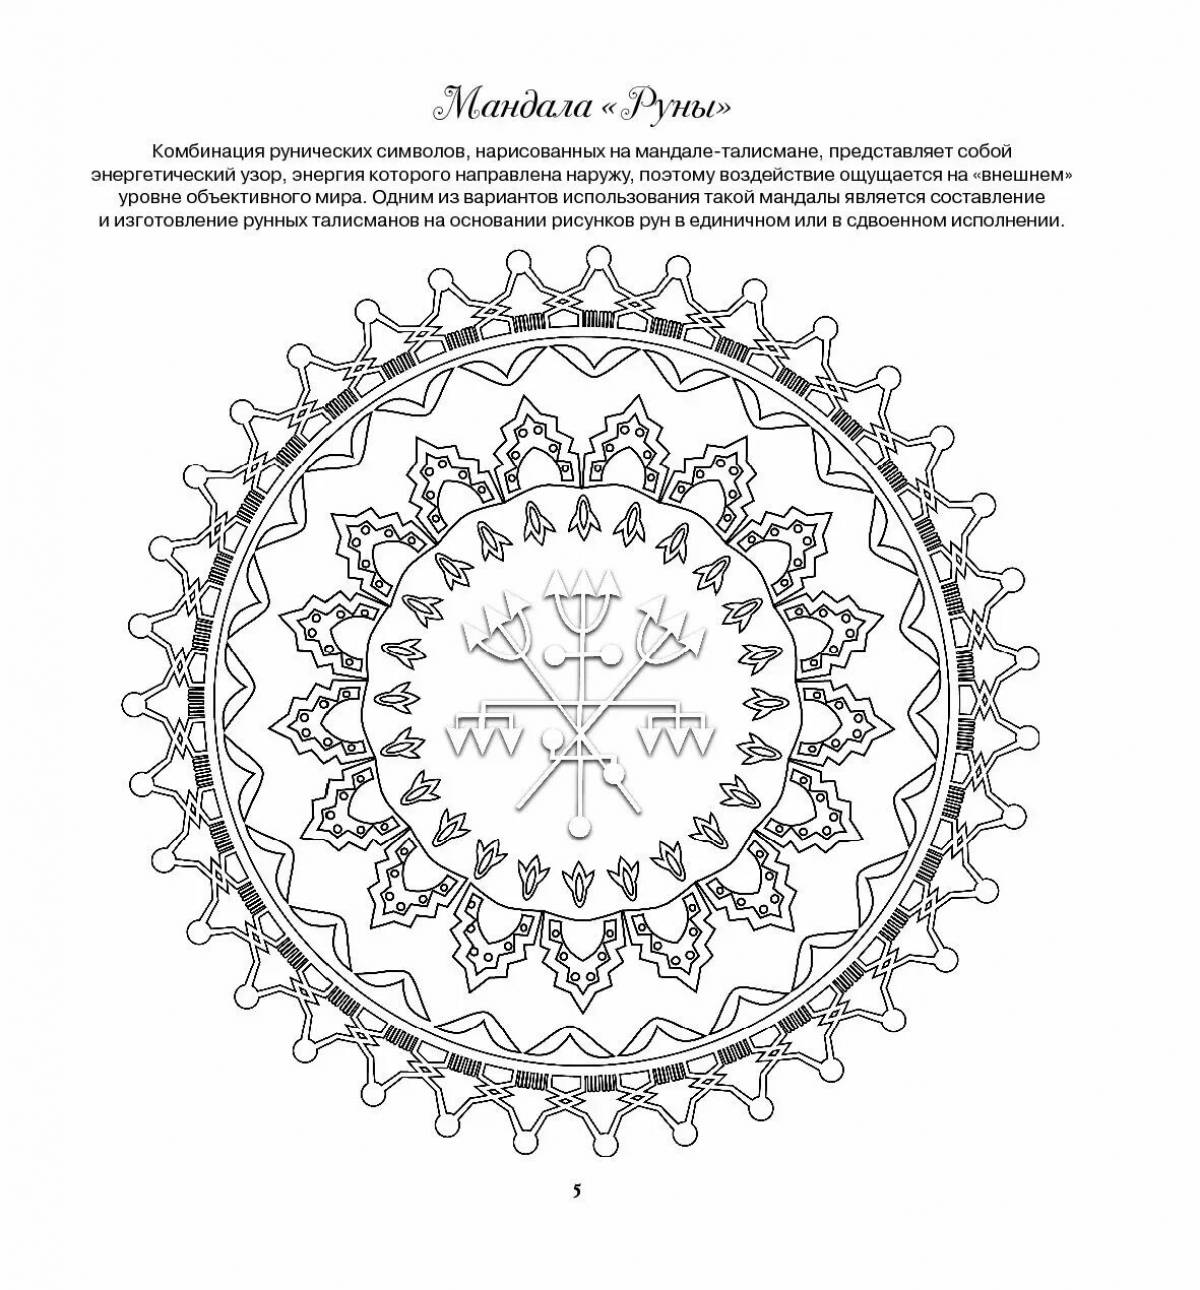 Mandala image meaning #3